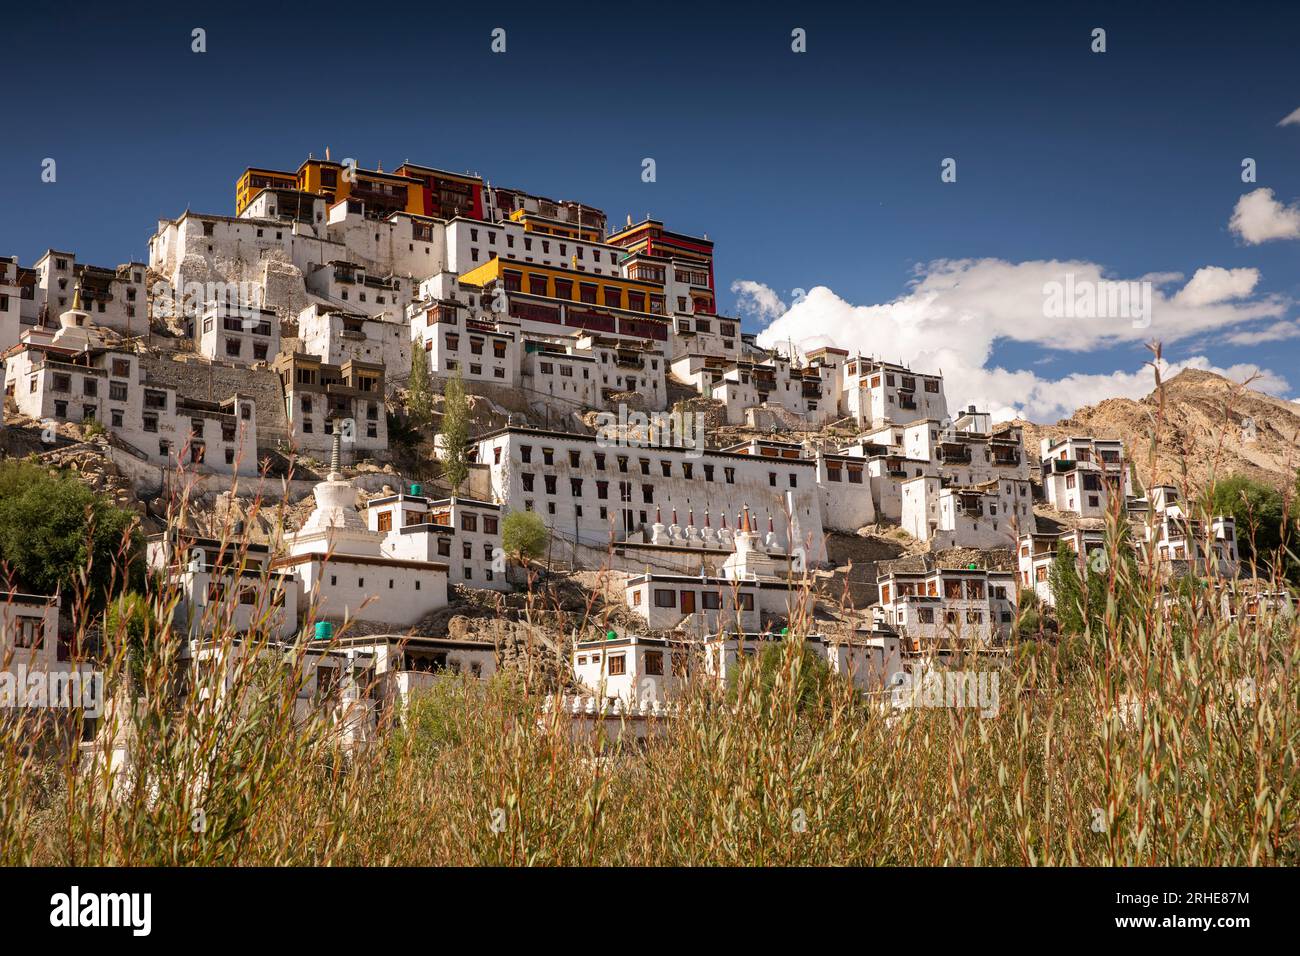 Inde, Ladakh, vallée de Leh, Thiksey Gompa, monastère bouddhiste de l'école Gelug sur la colline Banque D'Images